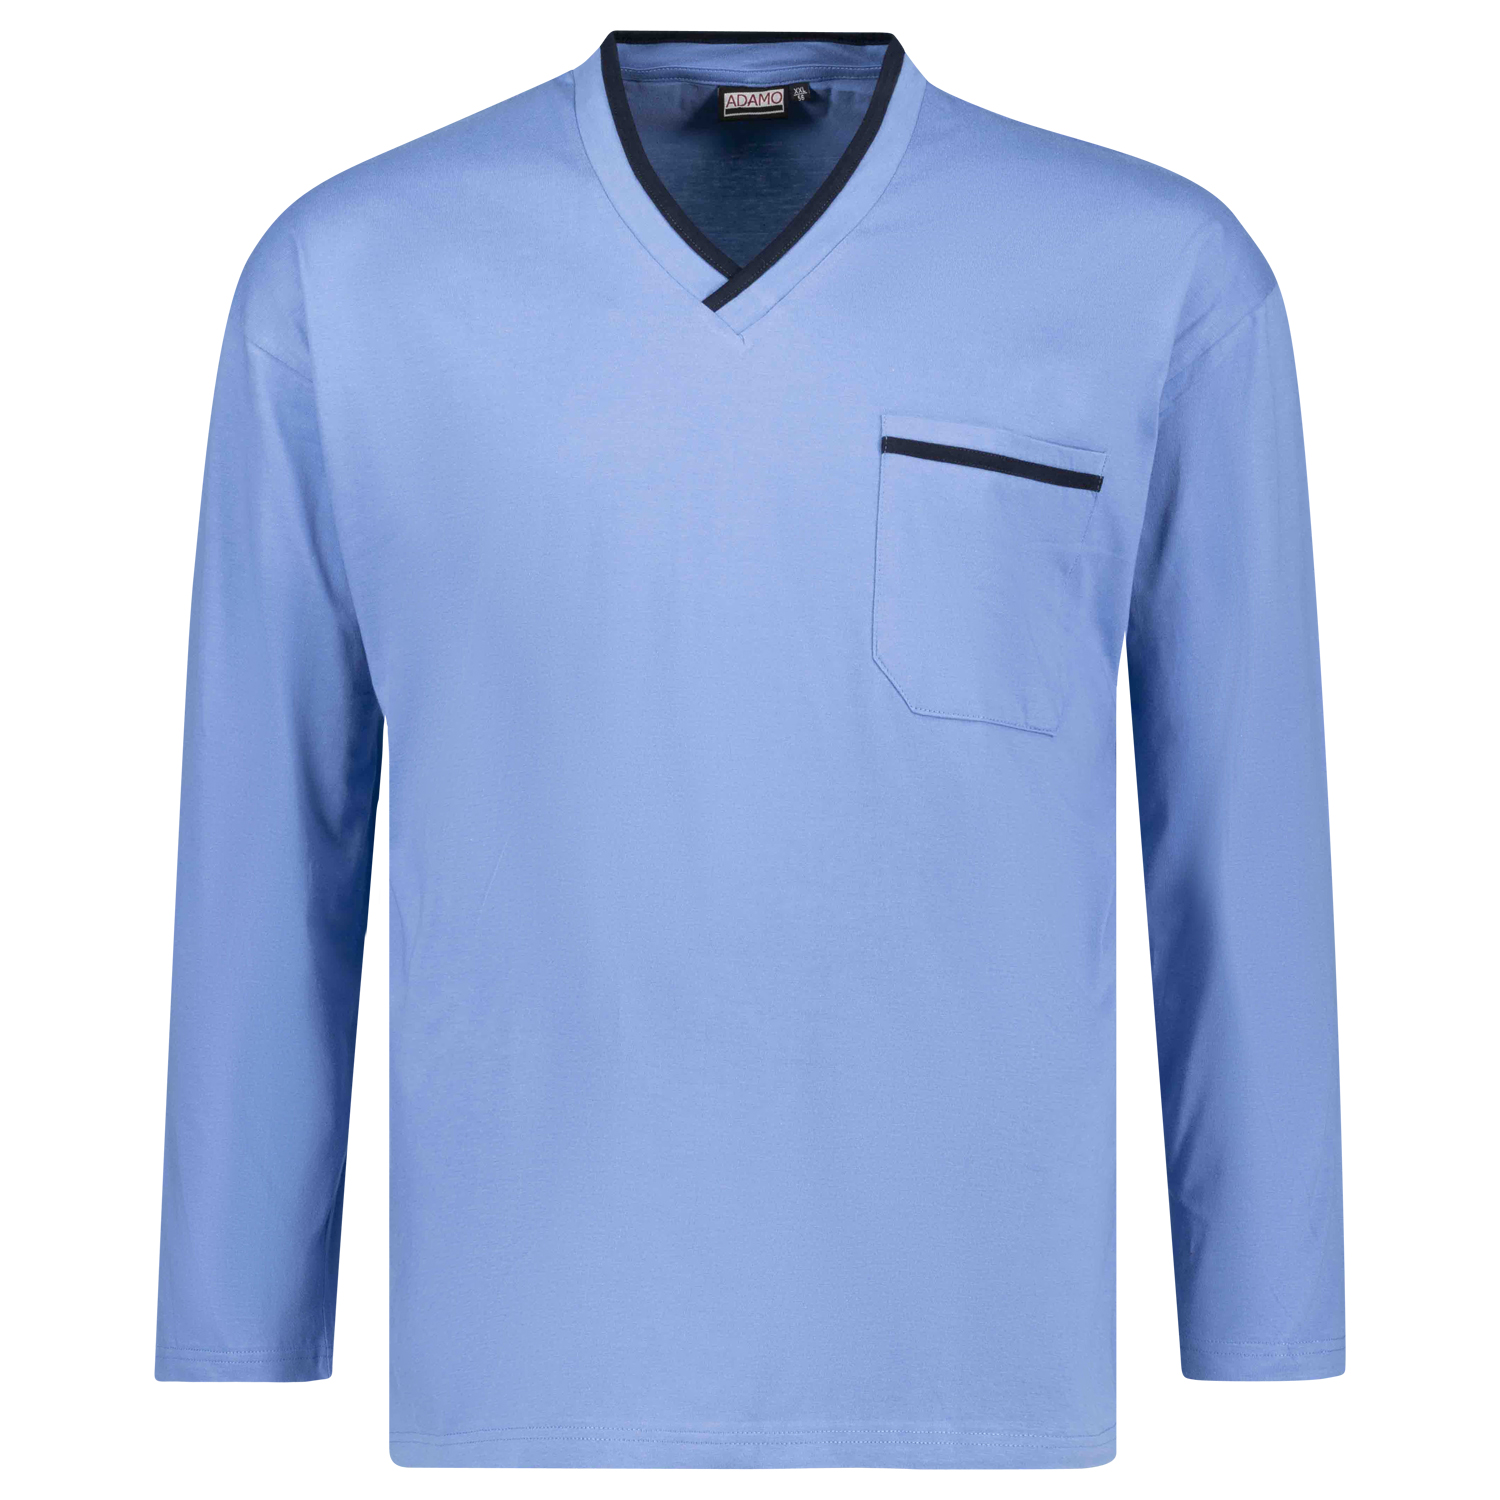 Langer Herren Schlafanzug in hellblau von Adamo in Übergrößen bis 10XL und in Langgrößen bis 122